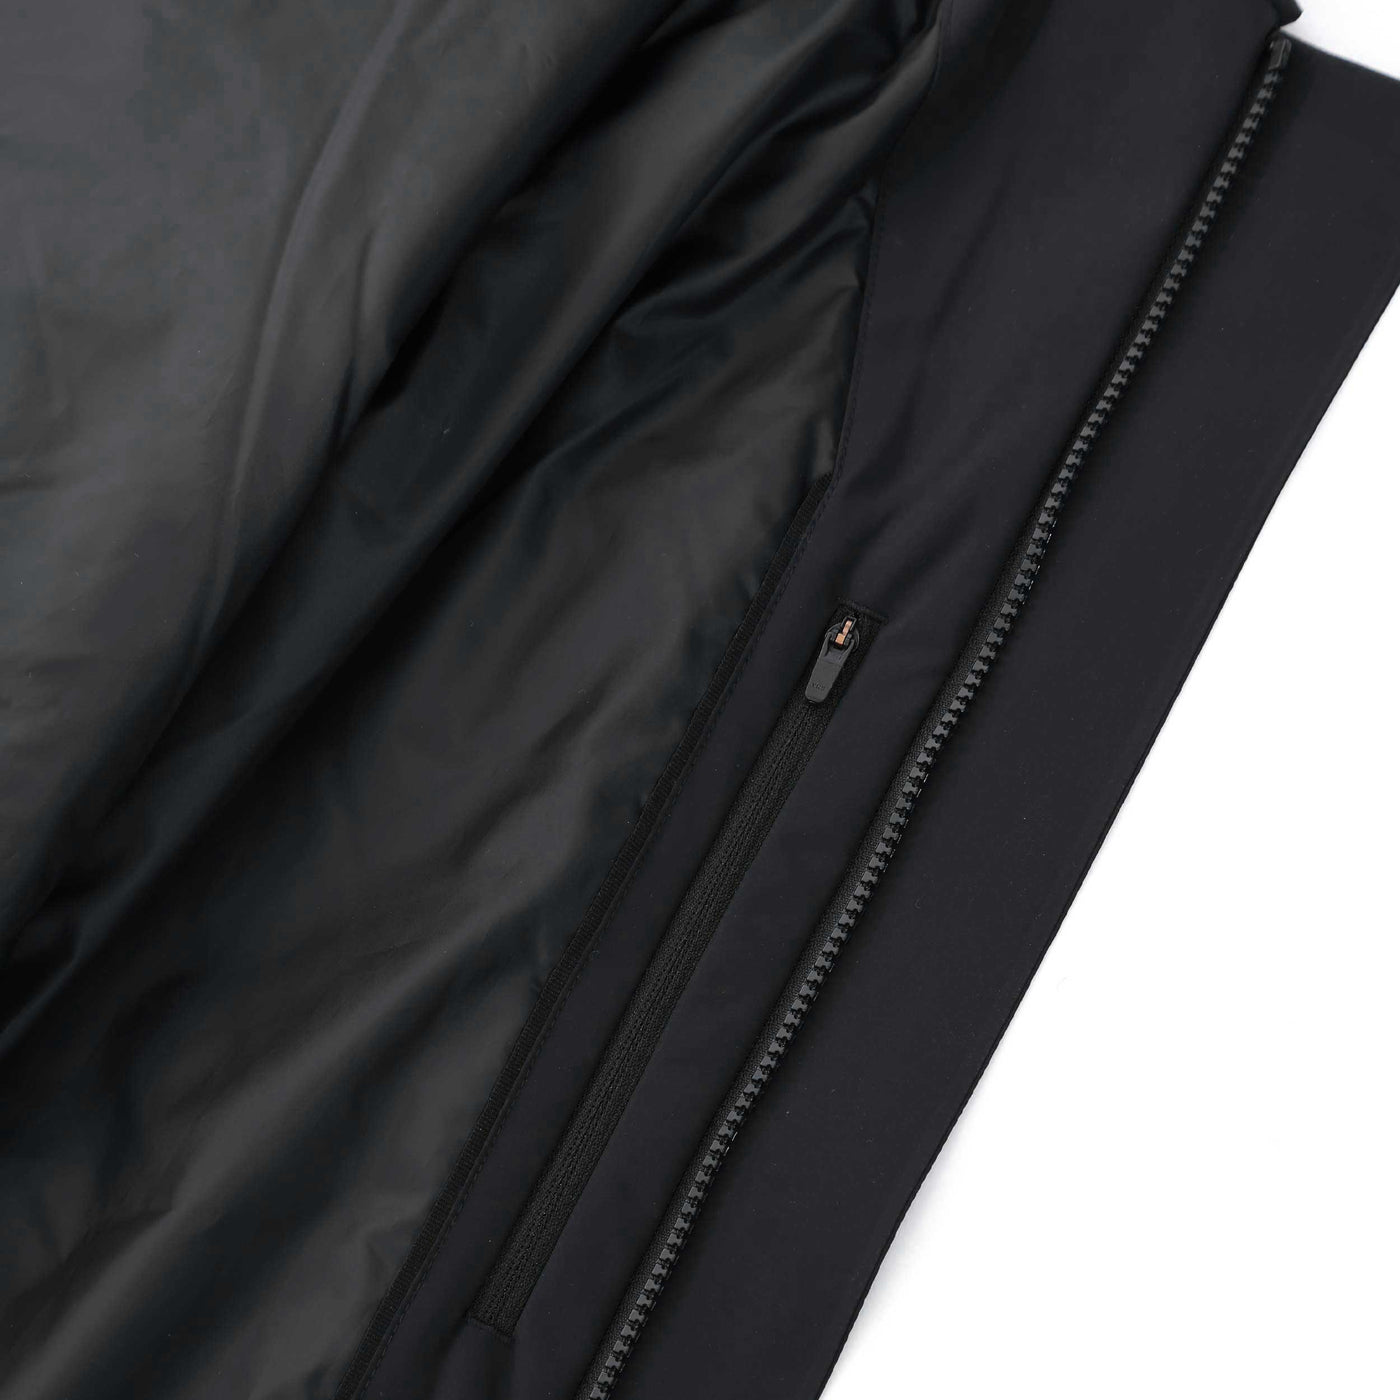 UBR Regulator Coat in Black Inside Pocket